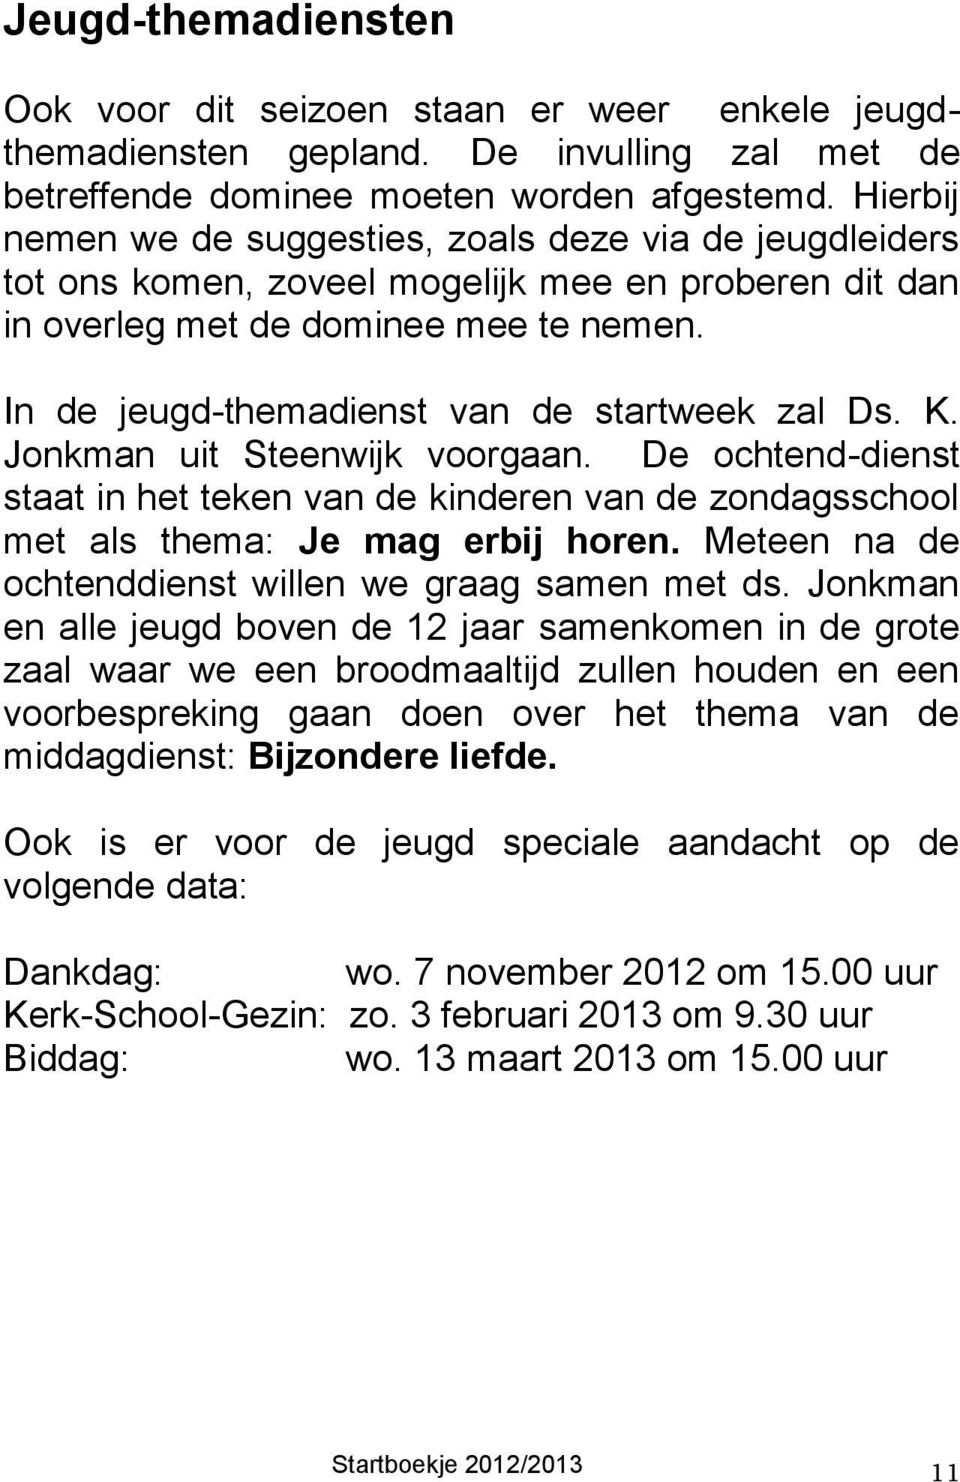 In de jeugd-themadienst van de startweek zal Ds. K. Jonkman uit Steenwijk voorgaan. De ochtend-dienst staat in het teken van de kinderen van de zondagsschool met als thema: Je mag erbij horen.